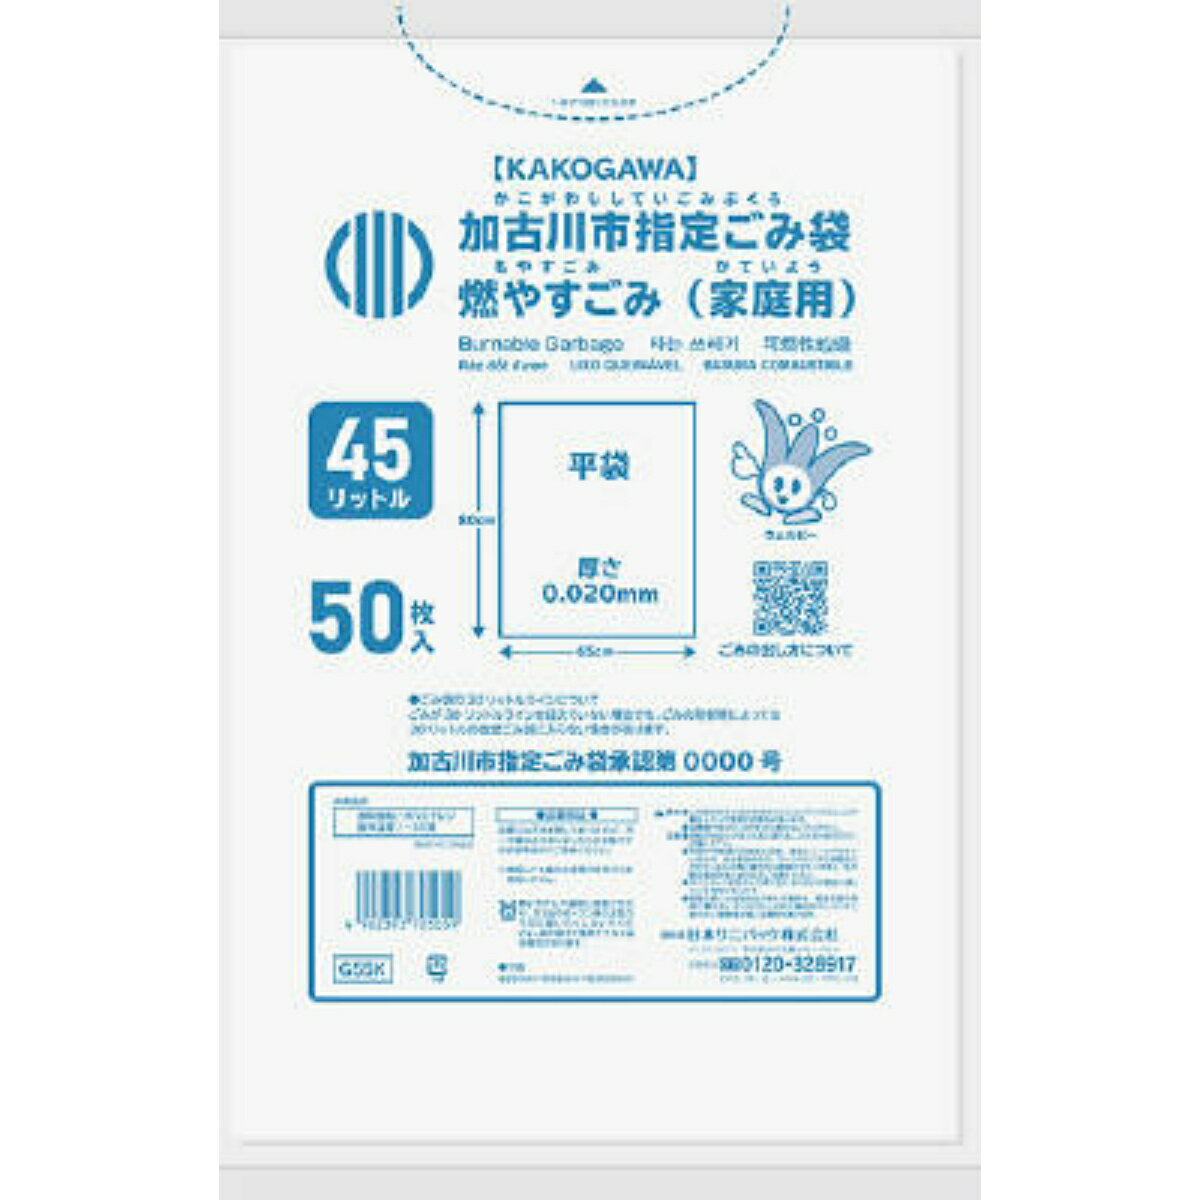 【送料込 まとめ買い×12個セット】日本サニパック G55K 加古川市 燃やすごみ 45L 50枚入 ゴミ袋